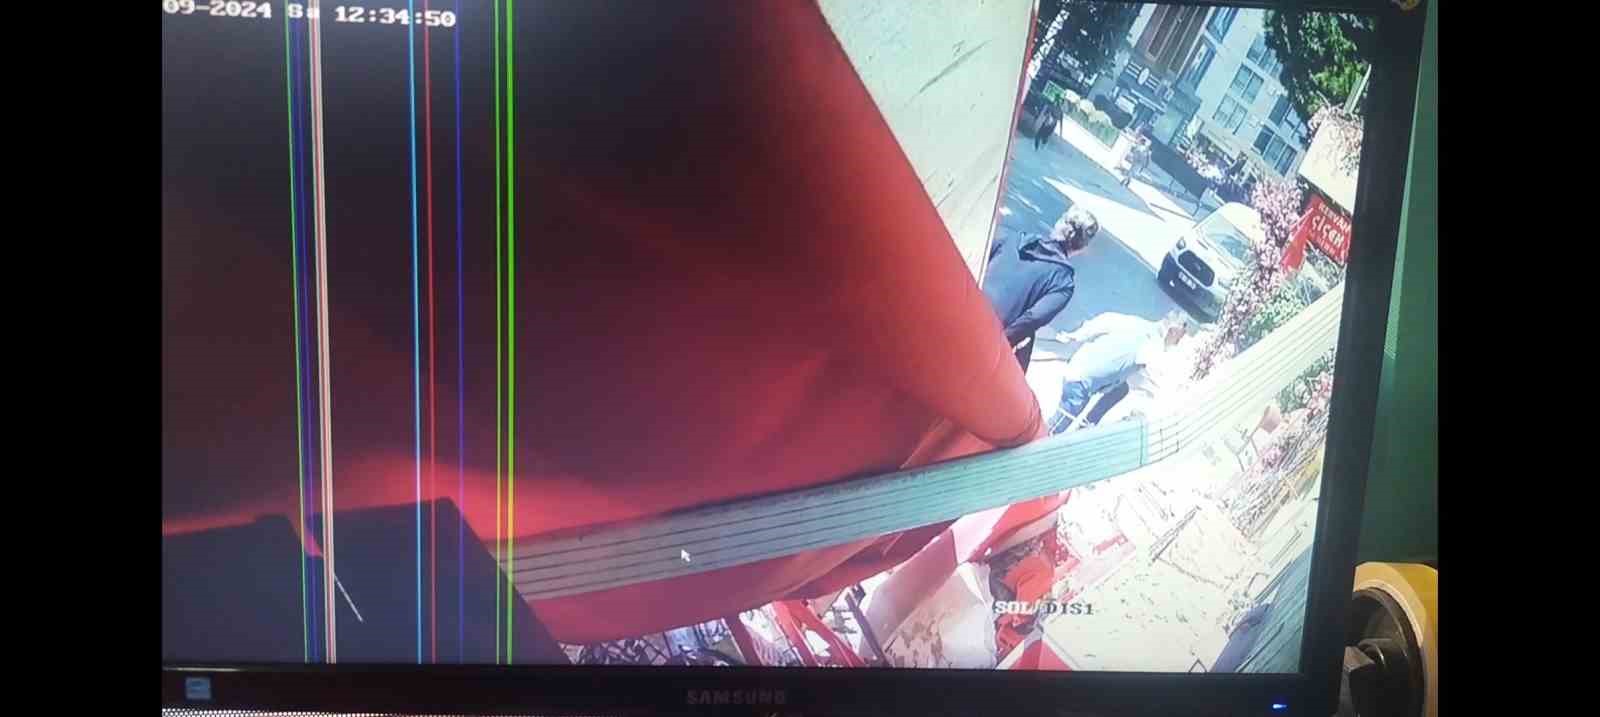 Kartal’da balkonun çökme anının kamera görüntüleri ortaya çıktı
